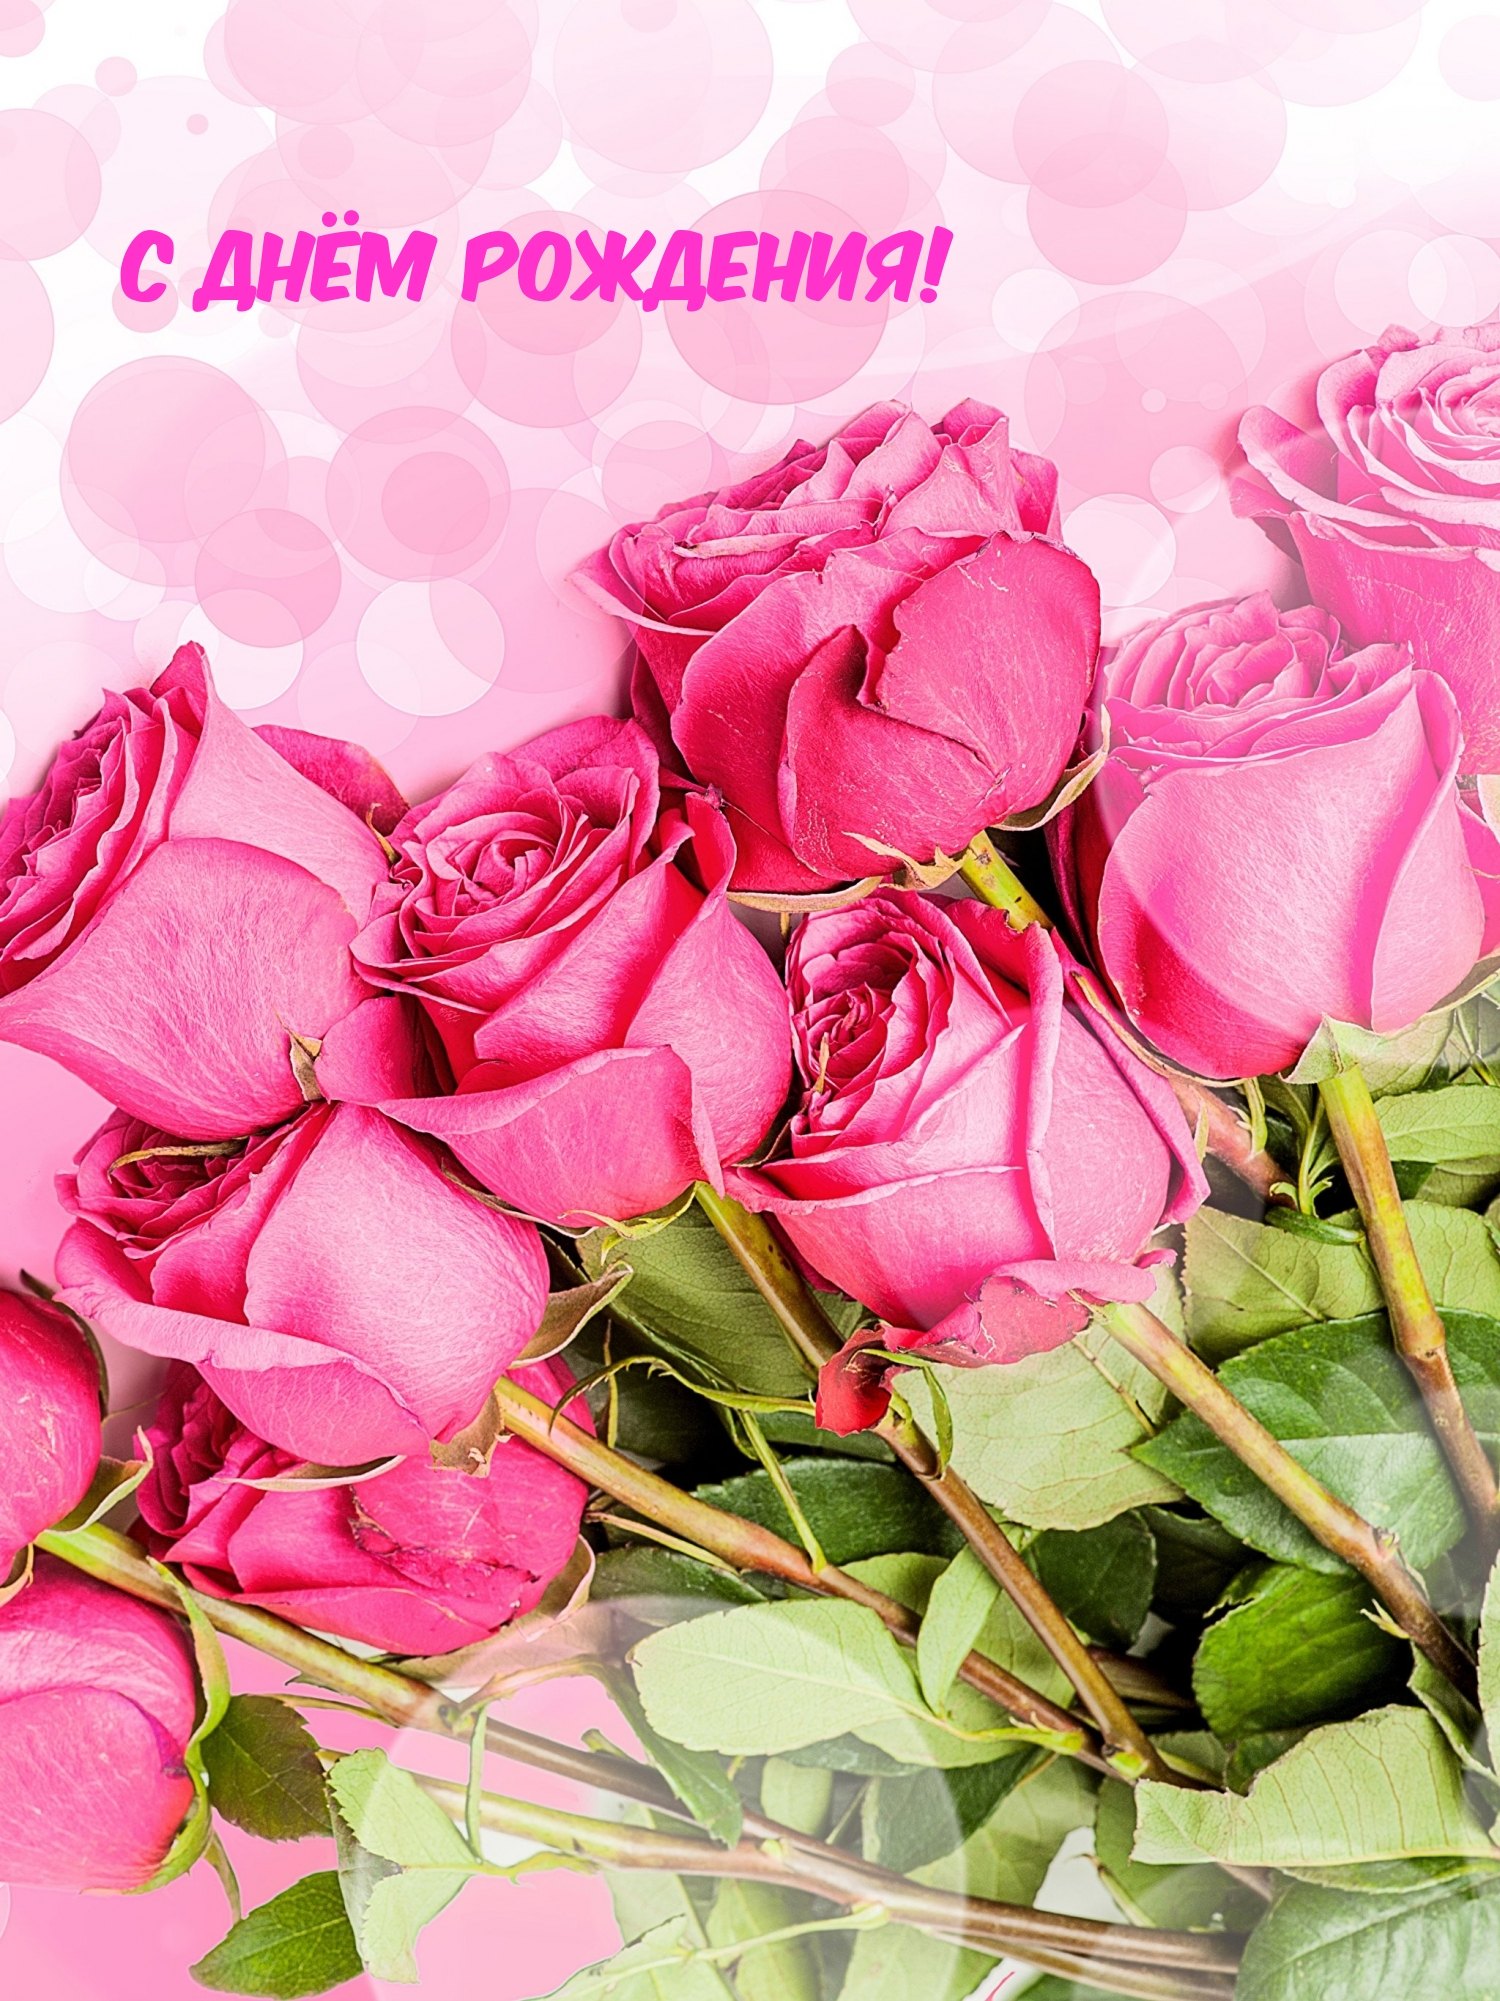 Открытка Поздравляю! (розовые цветы в вазе), РАО 65 отзывы